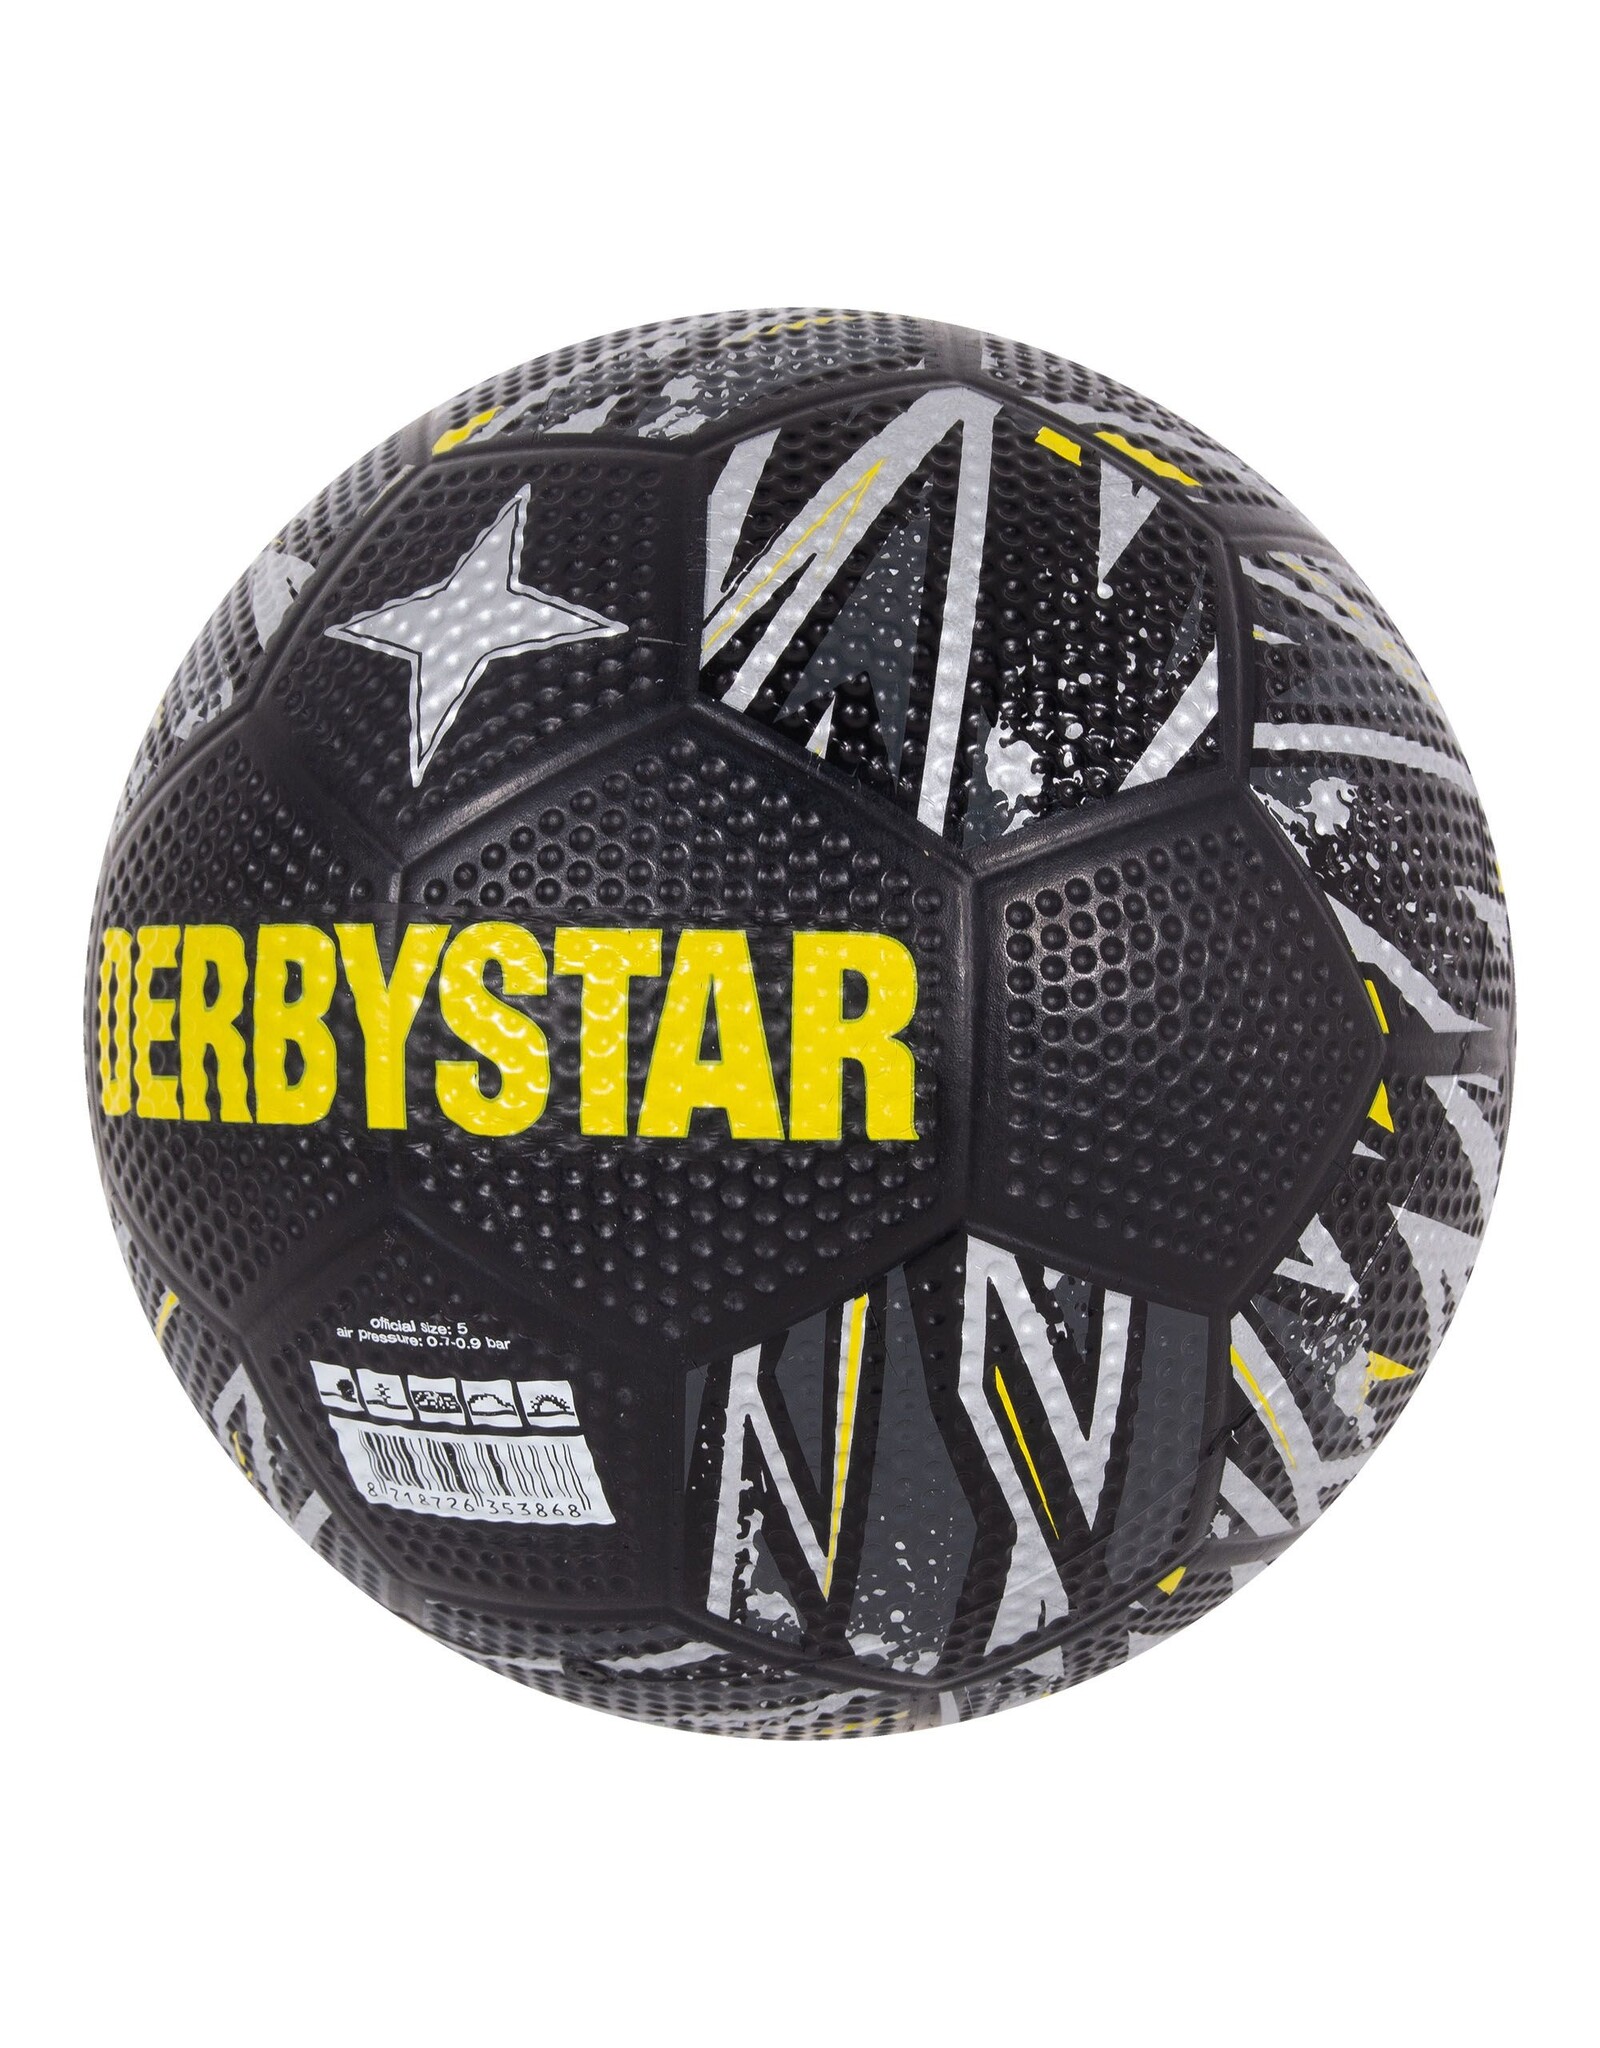 Derbystar Streetball-Black-Silver-Grey